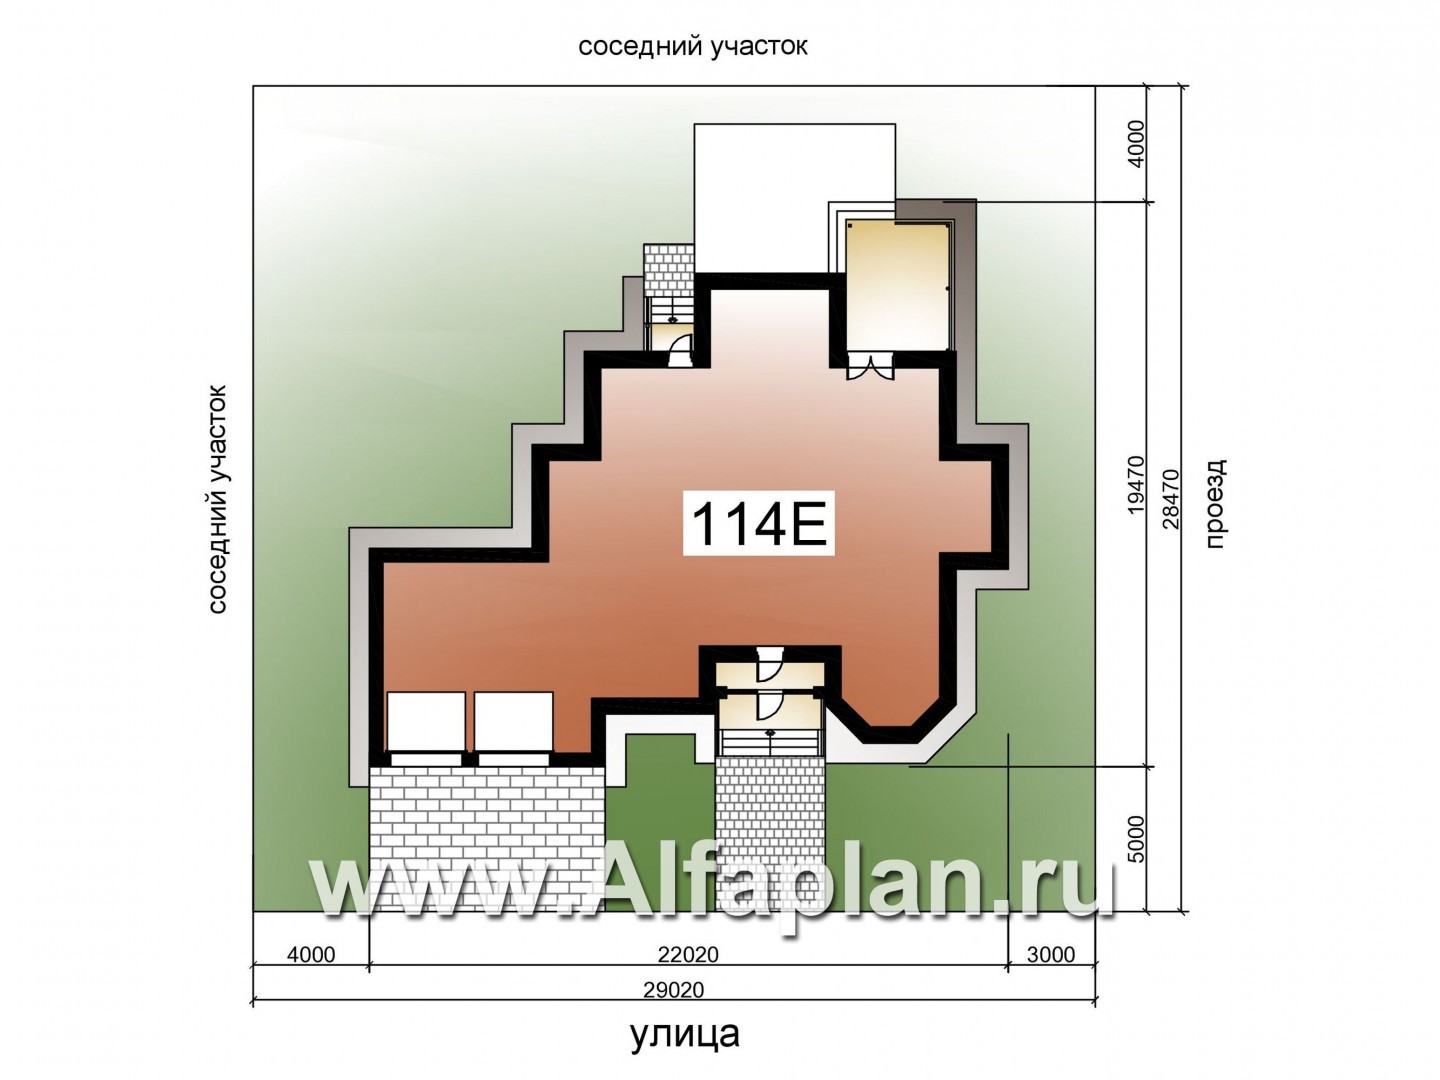 Проекты домов Альфаплан - «Воронцов»- респектабельный коттедж из газобетона с гаражом - дополнительное изображение №1